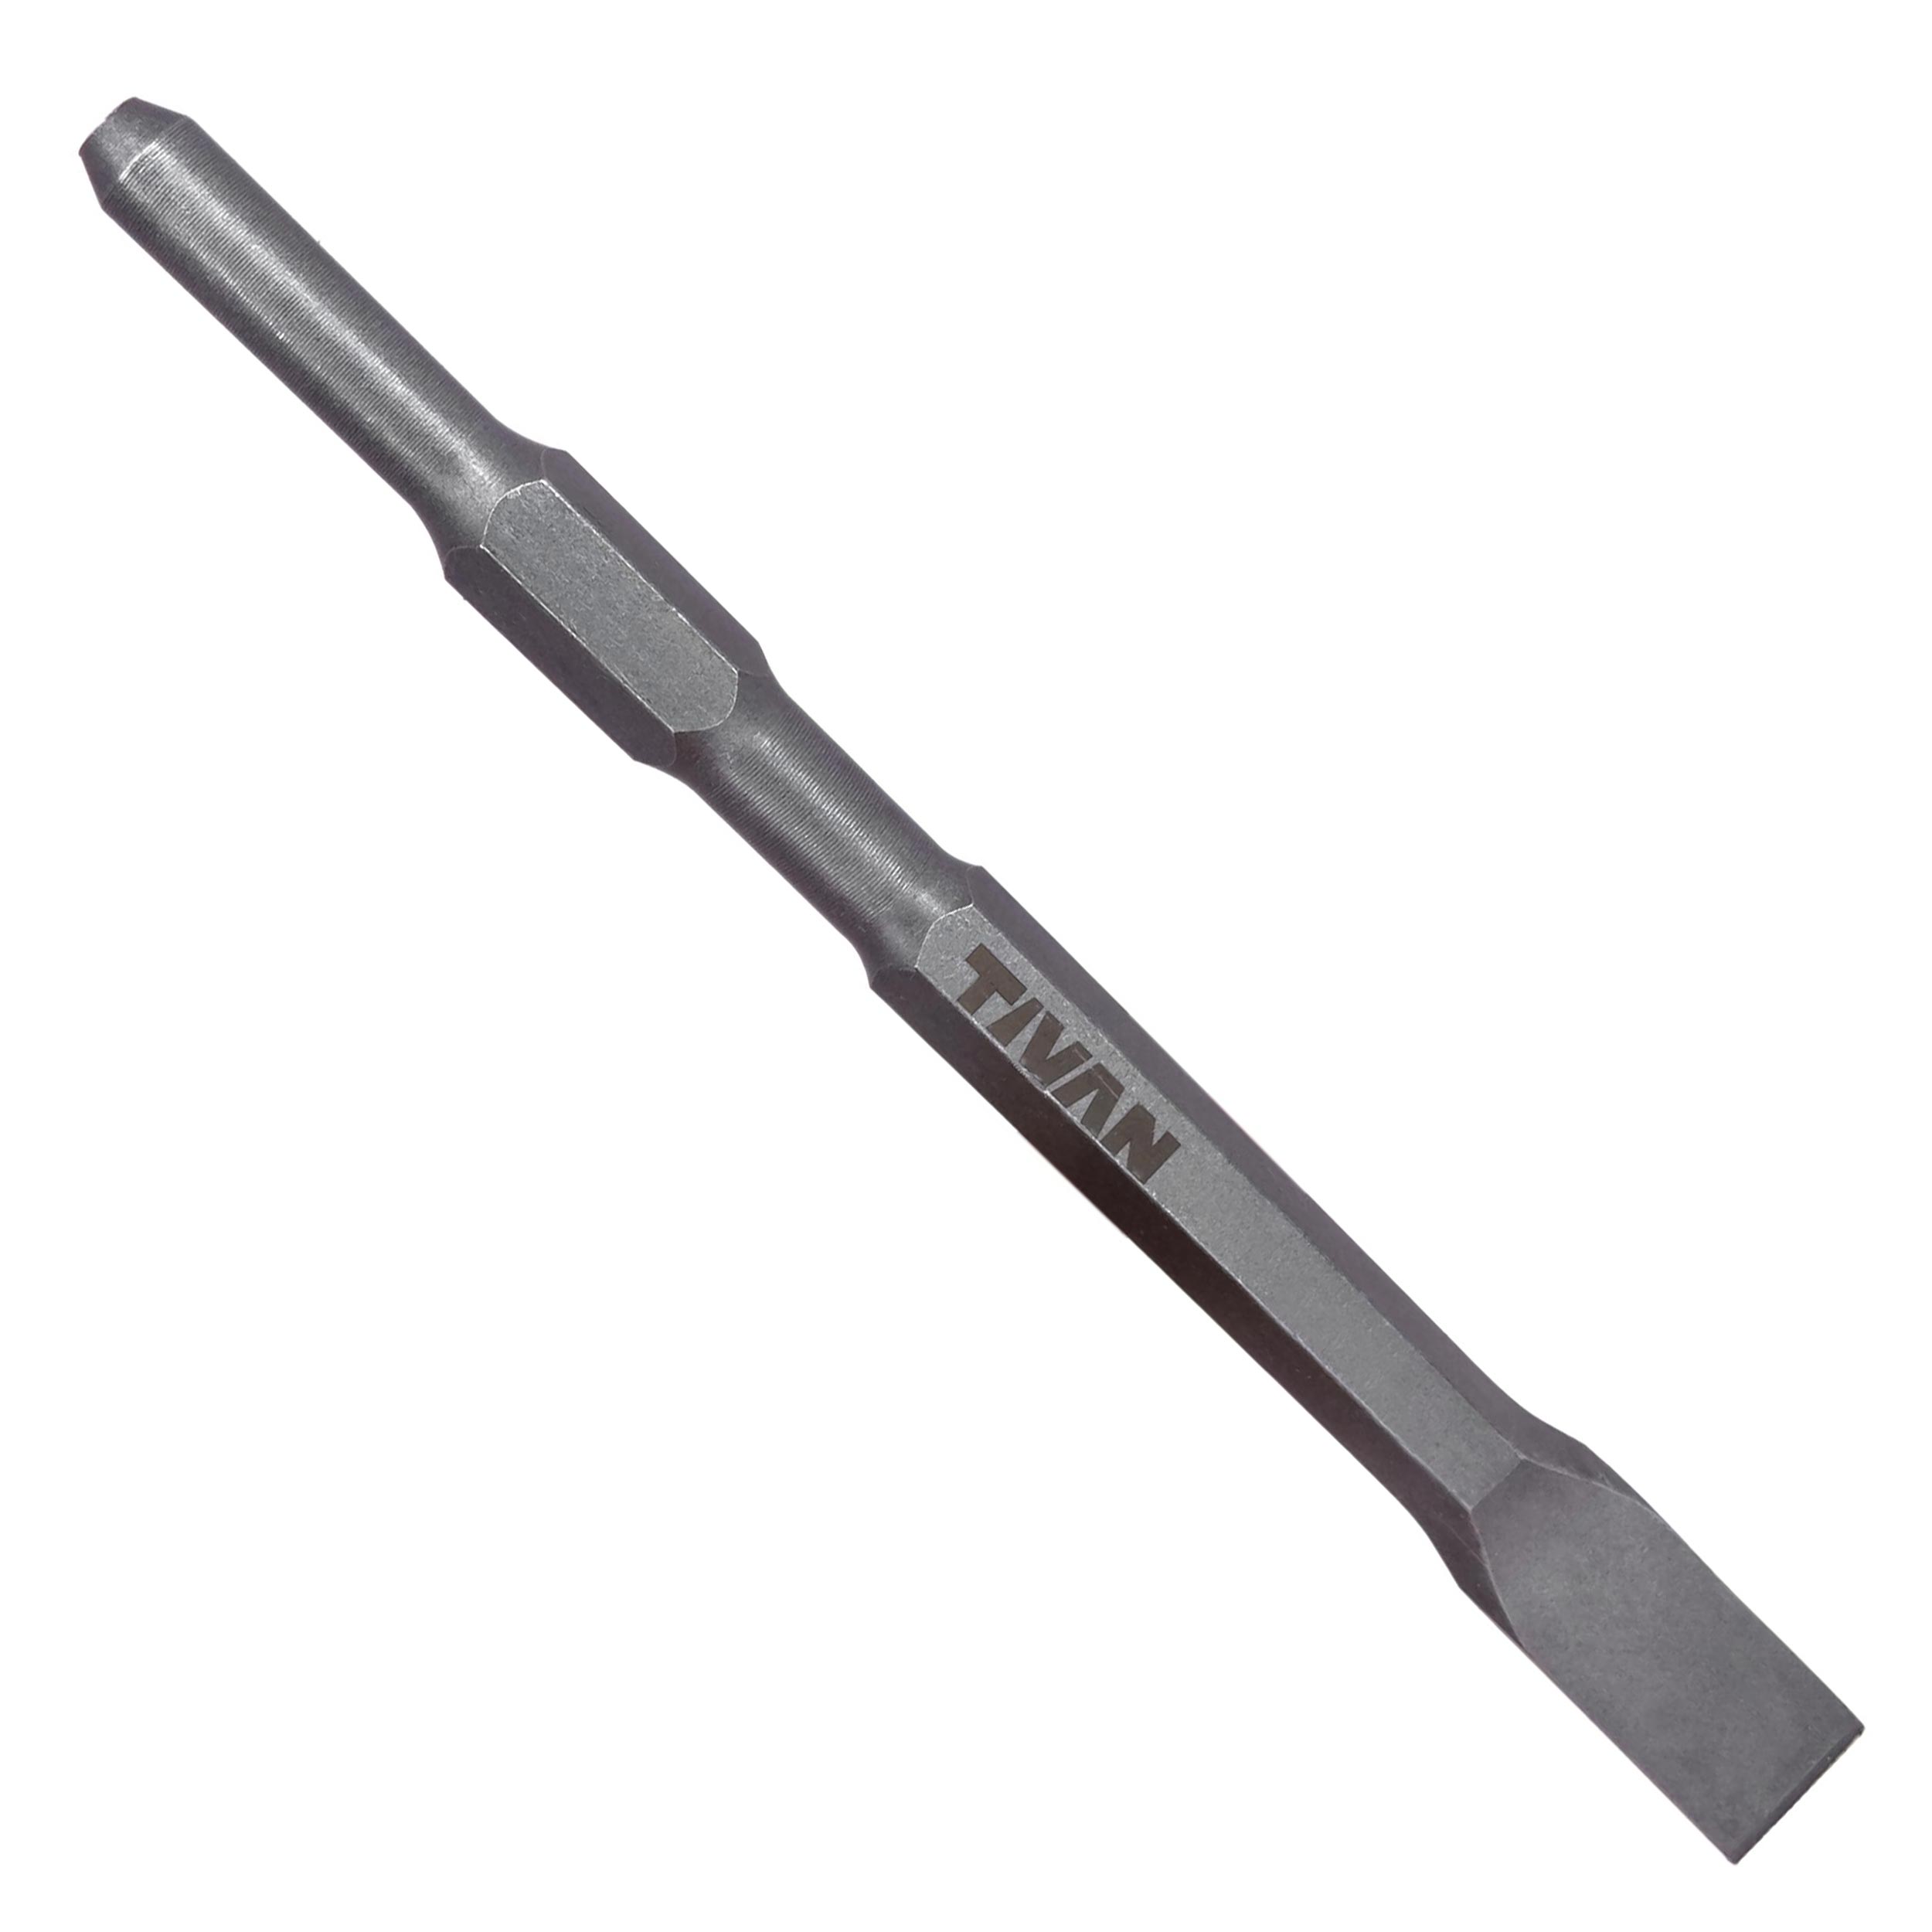 قلم شش شیار تخت تیوان مدل MMA-TW-6T280 سایز 280 میلیمتر